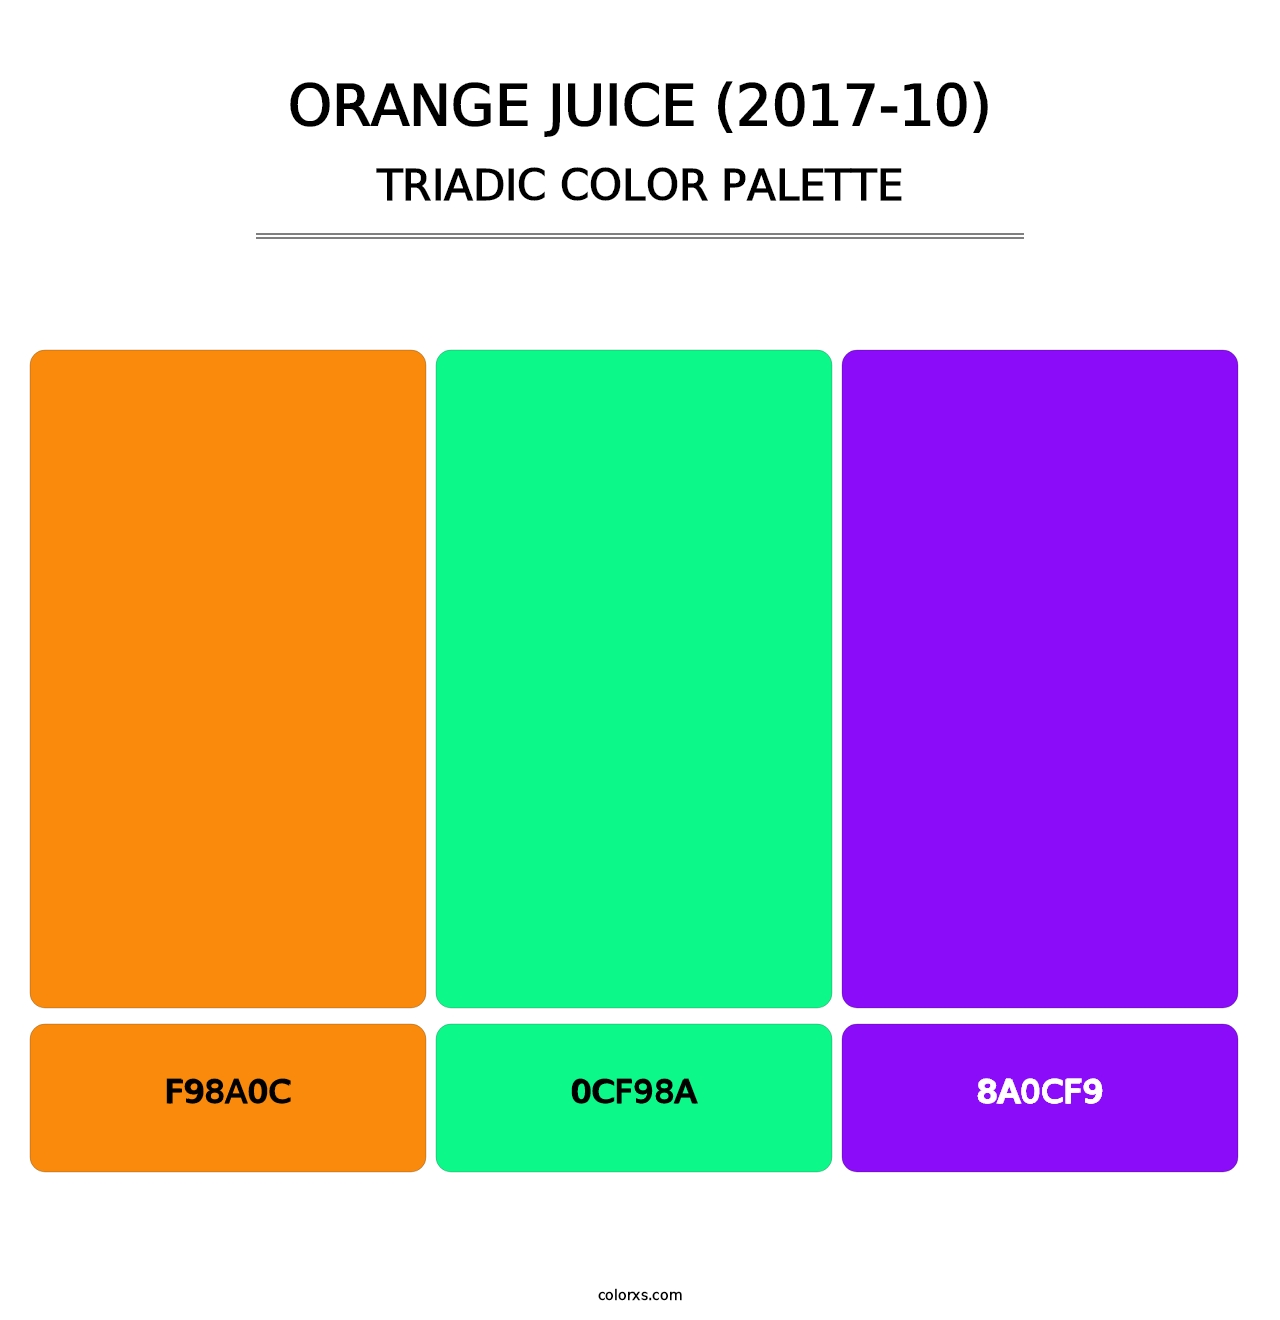 Orange Juice (2017-10) - Triadic Color Palette